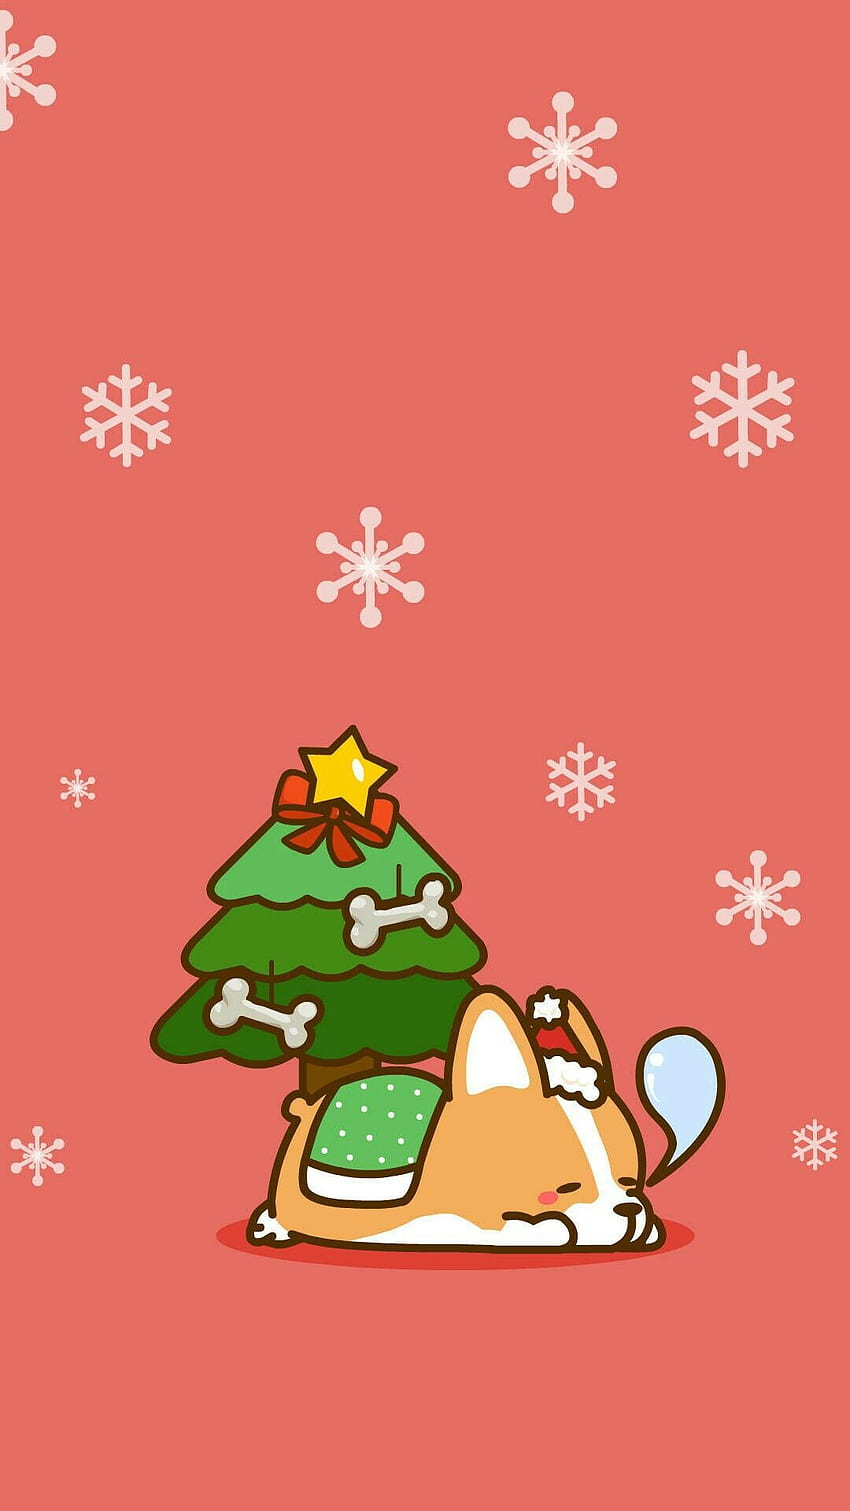 23 Cute Christmas Wallpapers  Christmas Cupcake Wallpaper  Idea Wallpapers   iPhone WallpapersColor Schemes